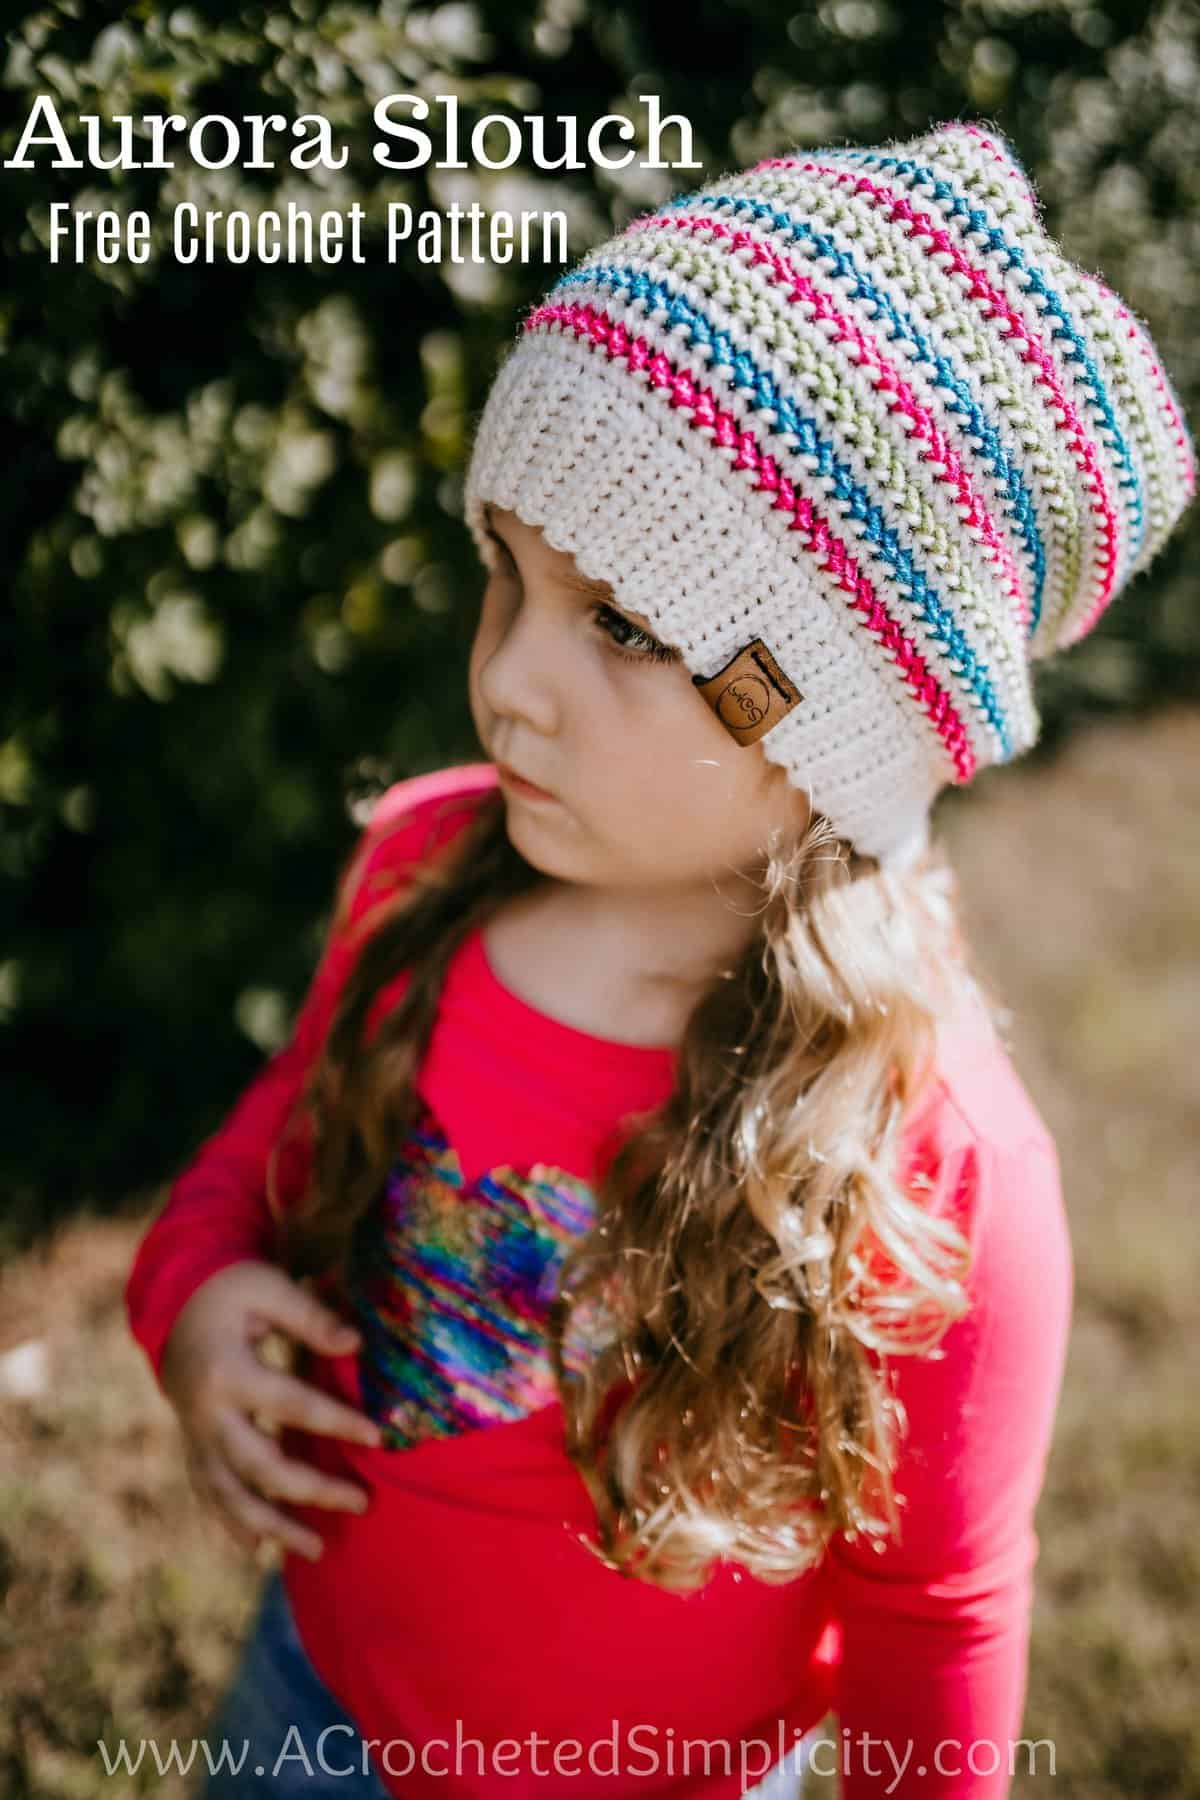 Free Crochet Hat Pattern - Aurora Slouch by A Crocheted Simplicity. #freecrochetpattern #freecrochethatpattern #freecrochetslouchpattern #crochethat #crochetslouch #handmade #crochet